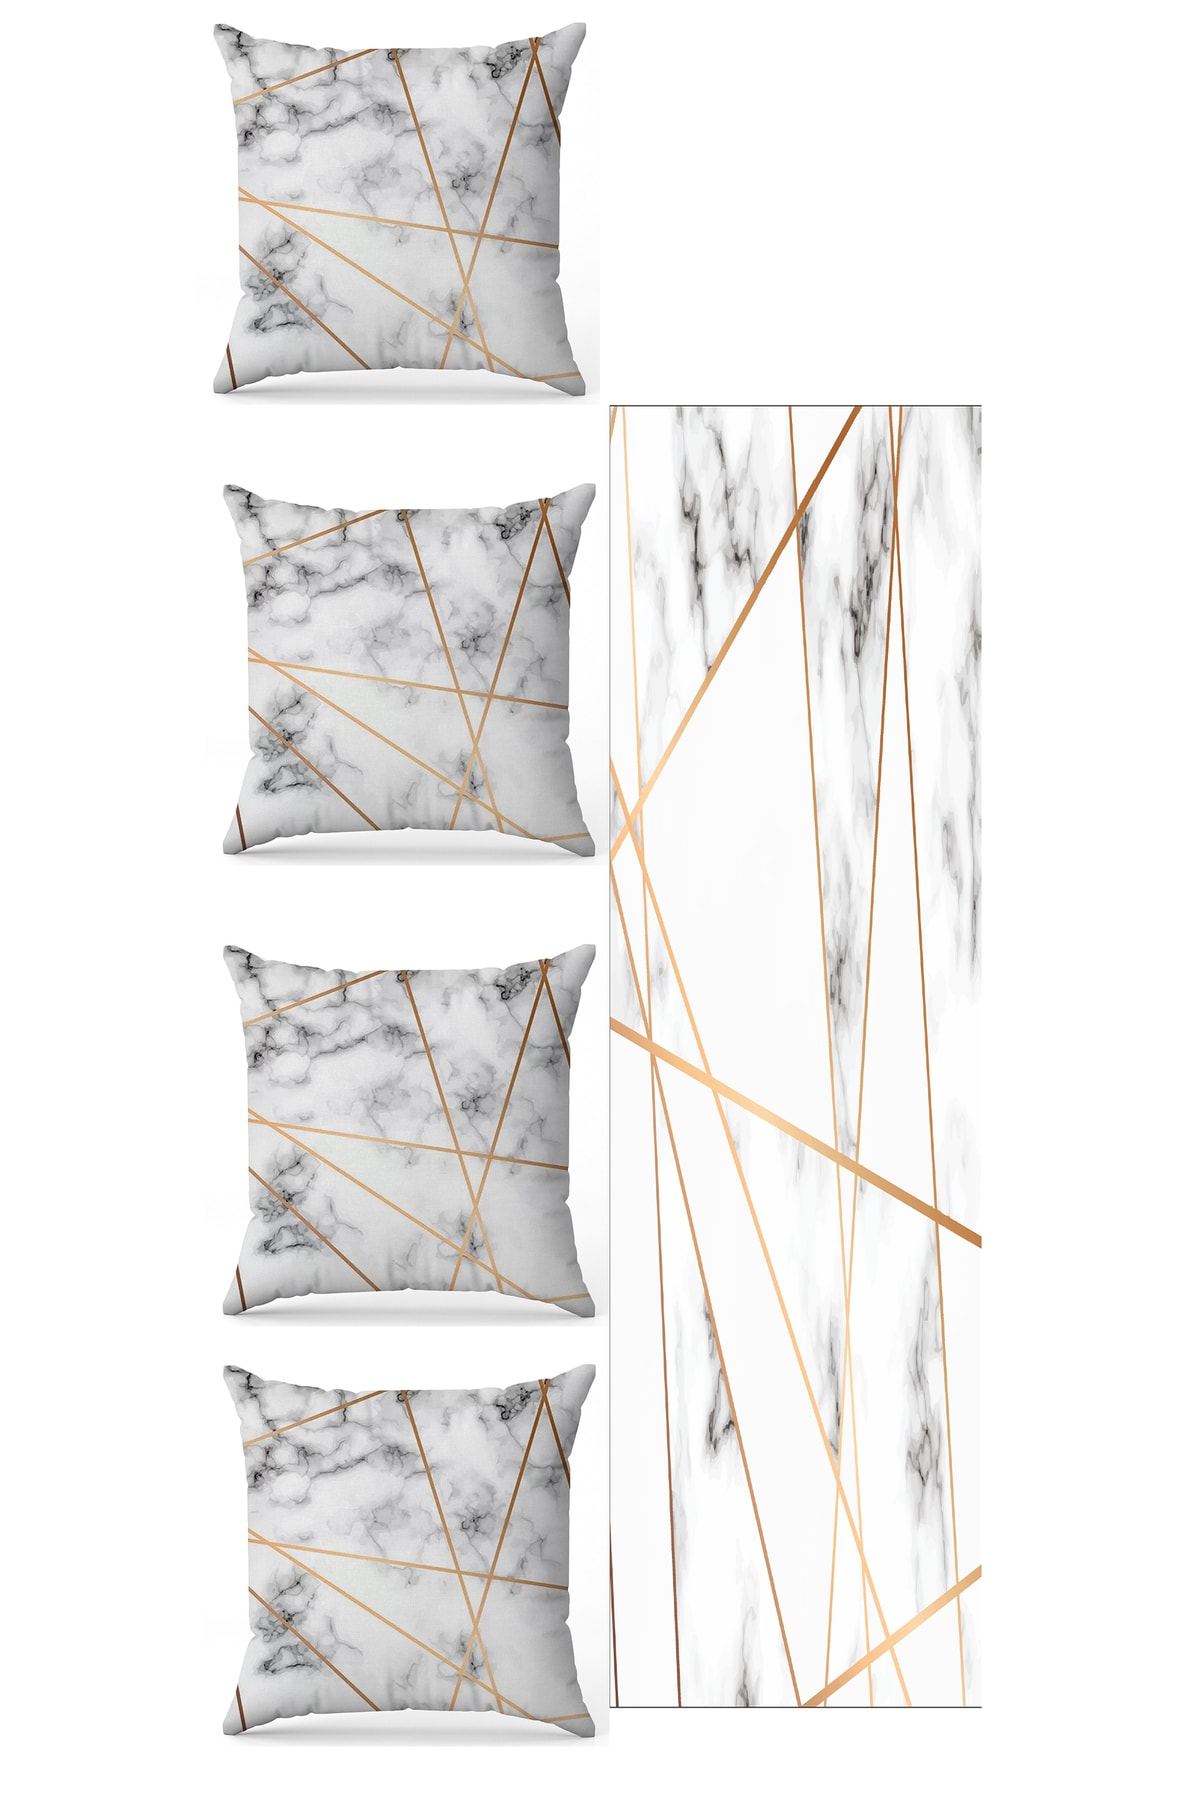 BY Fatih Concept Gold Detaylı Beyaz Mermer5 Parça Çift Taraf Baskılı Özel Tasarım Kırlent Kılıfı Runner Seti